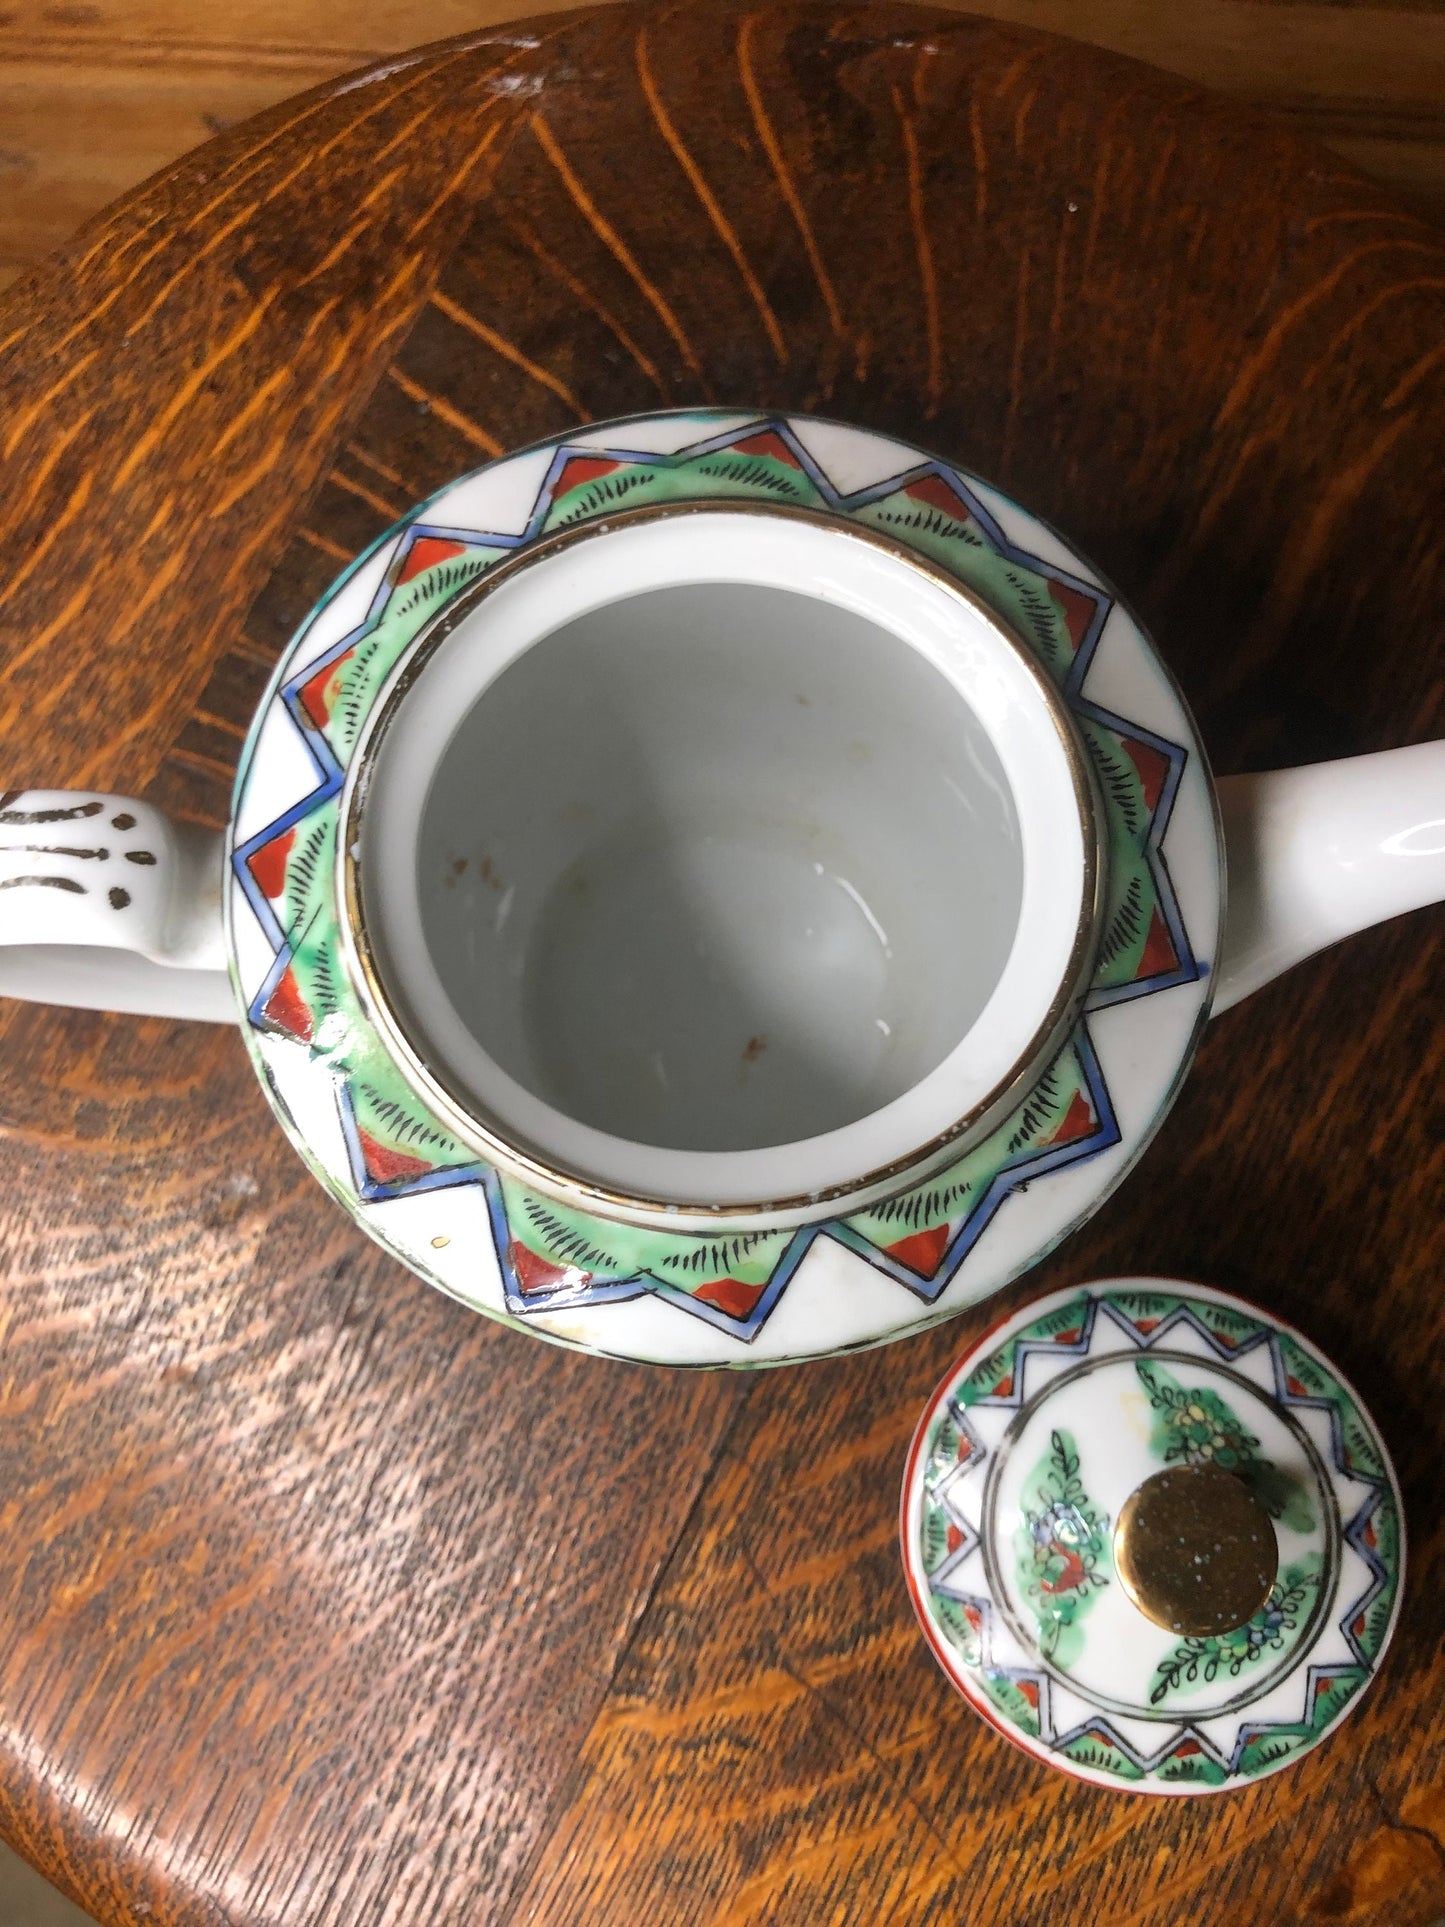 Vintage Rose Canton Tea Pot